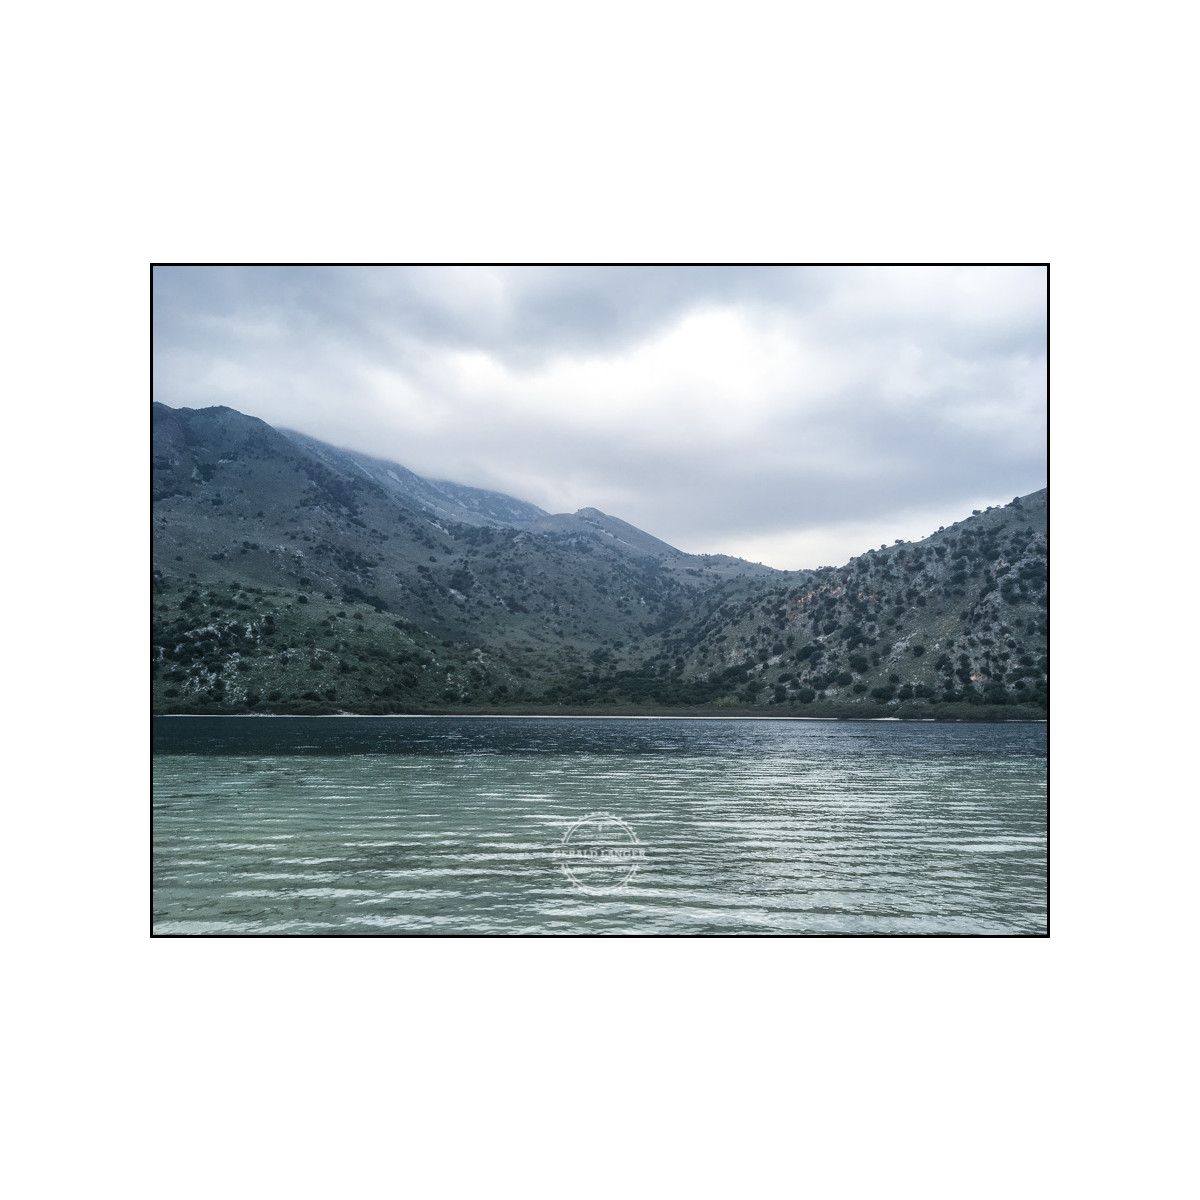 20181115 Kreta by iPhone SE © Gerald Langer 52 - Gerald Langer